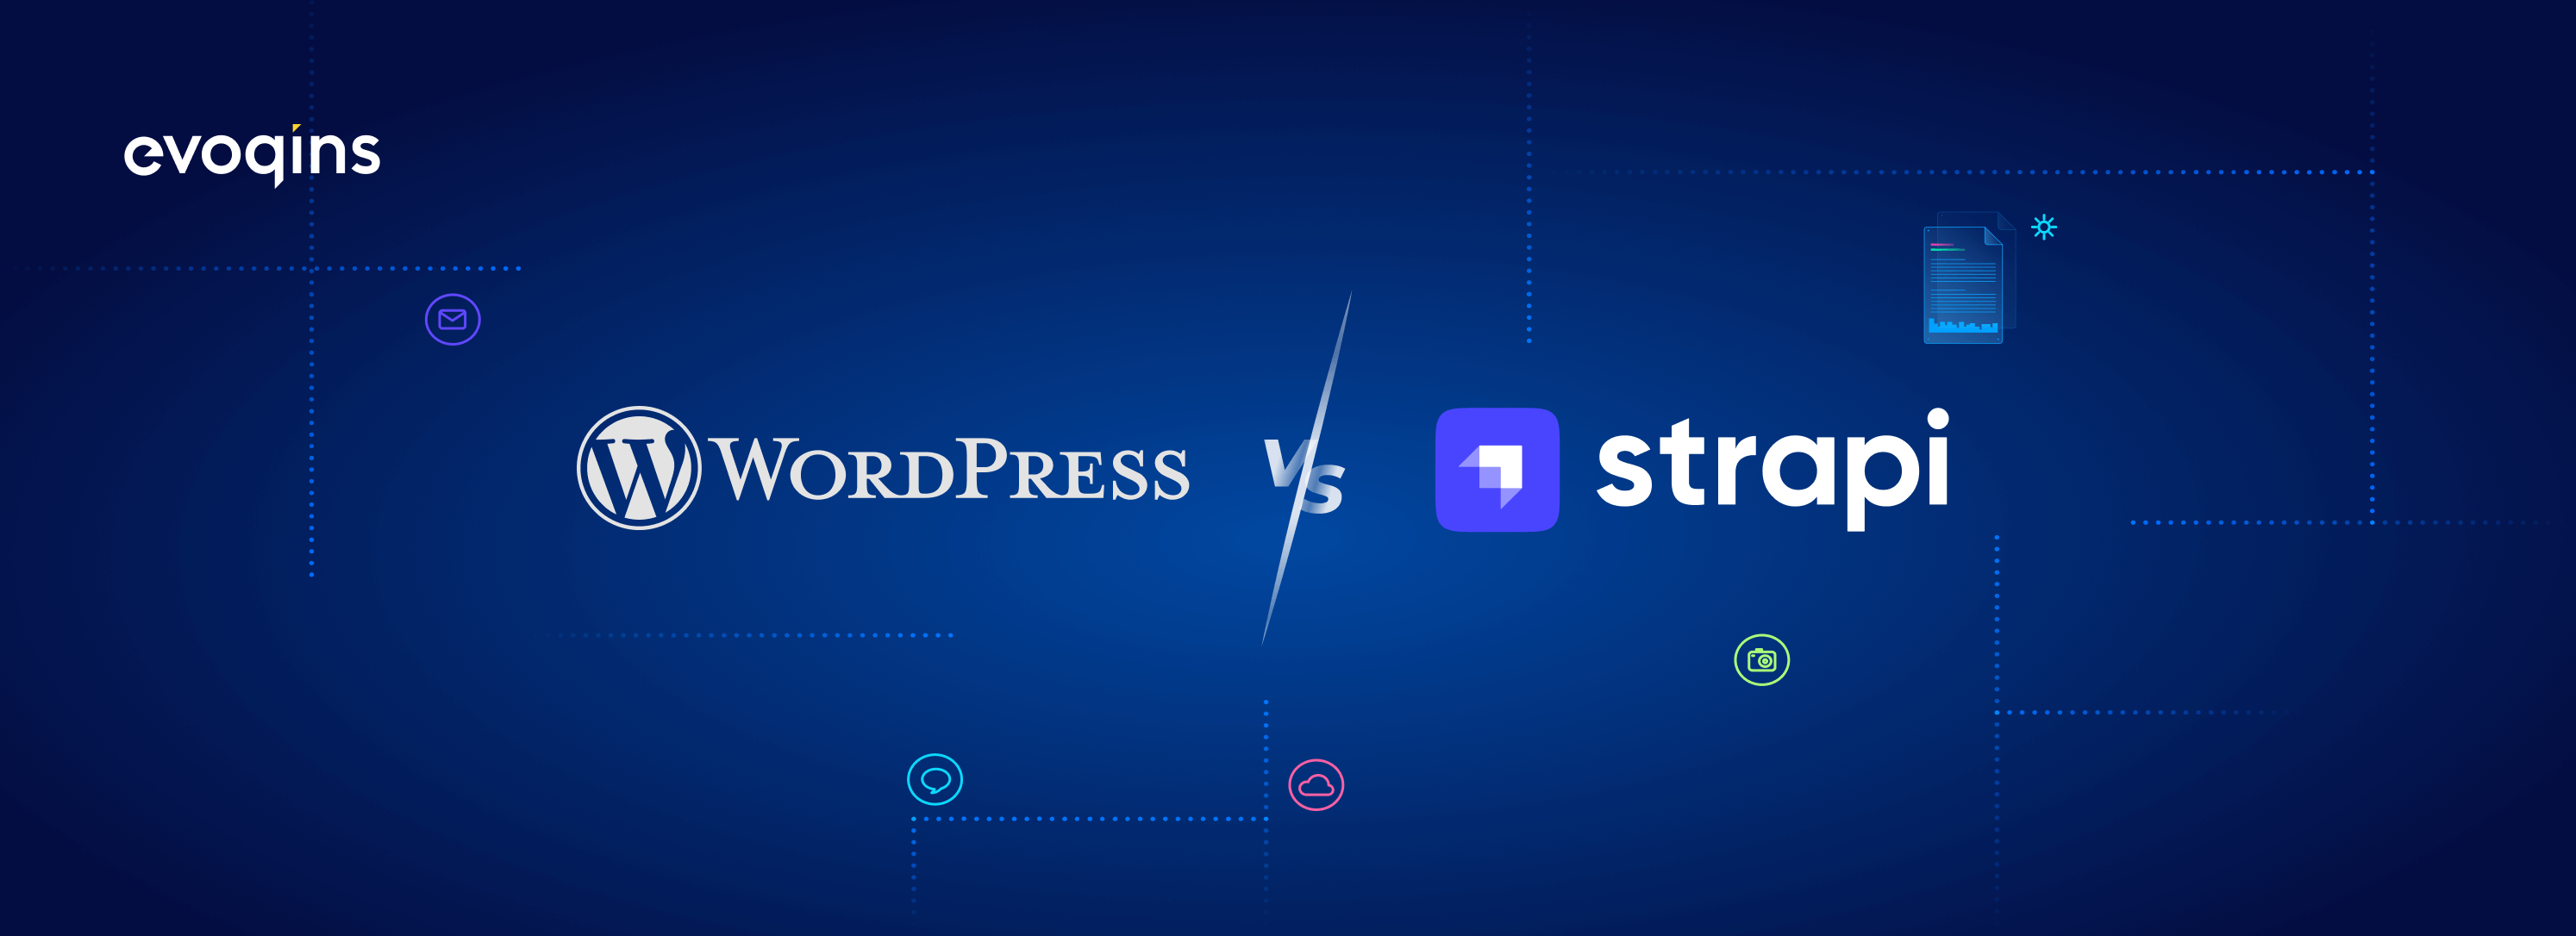 WorpPress or Strapi for website development